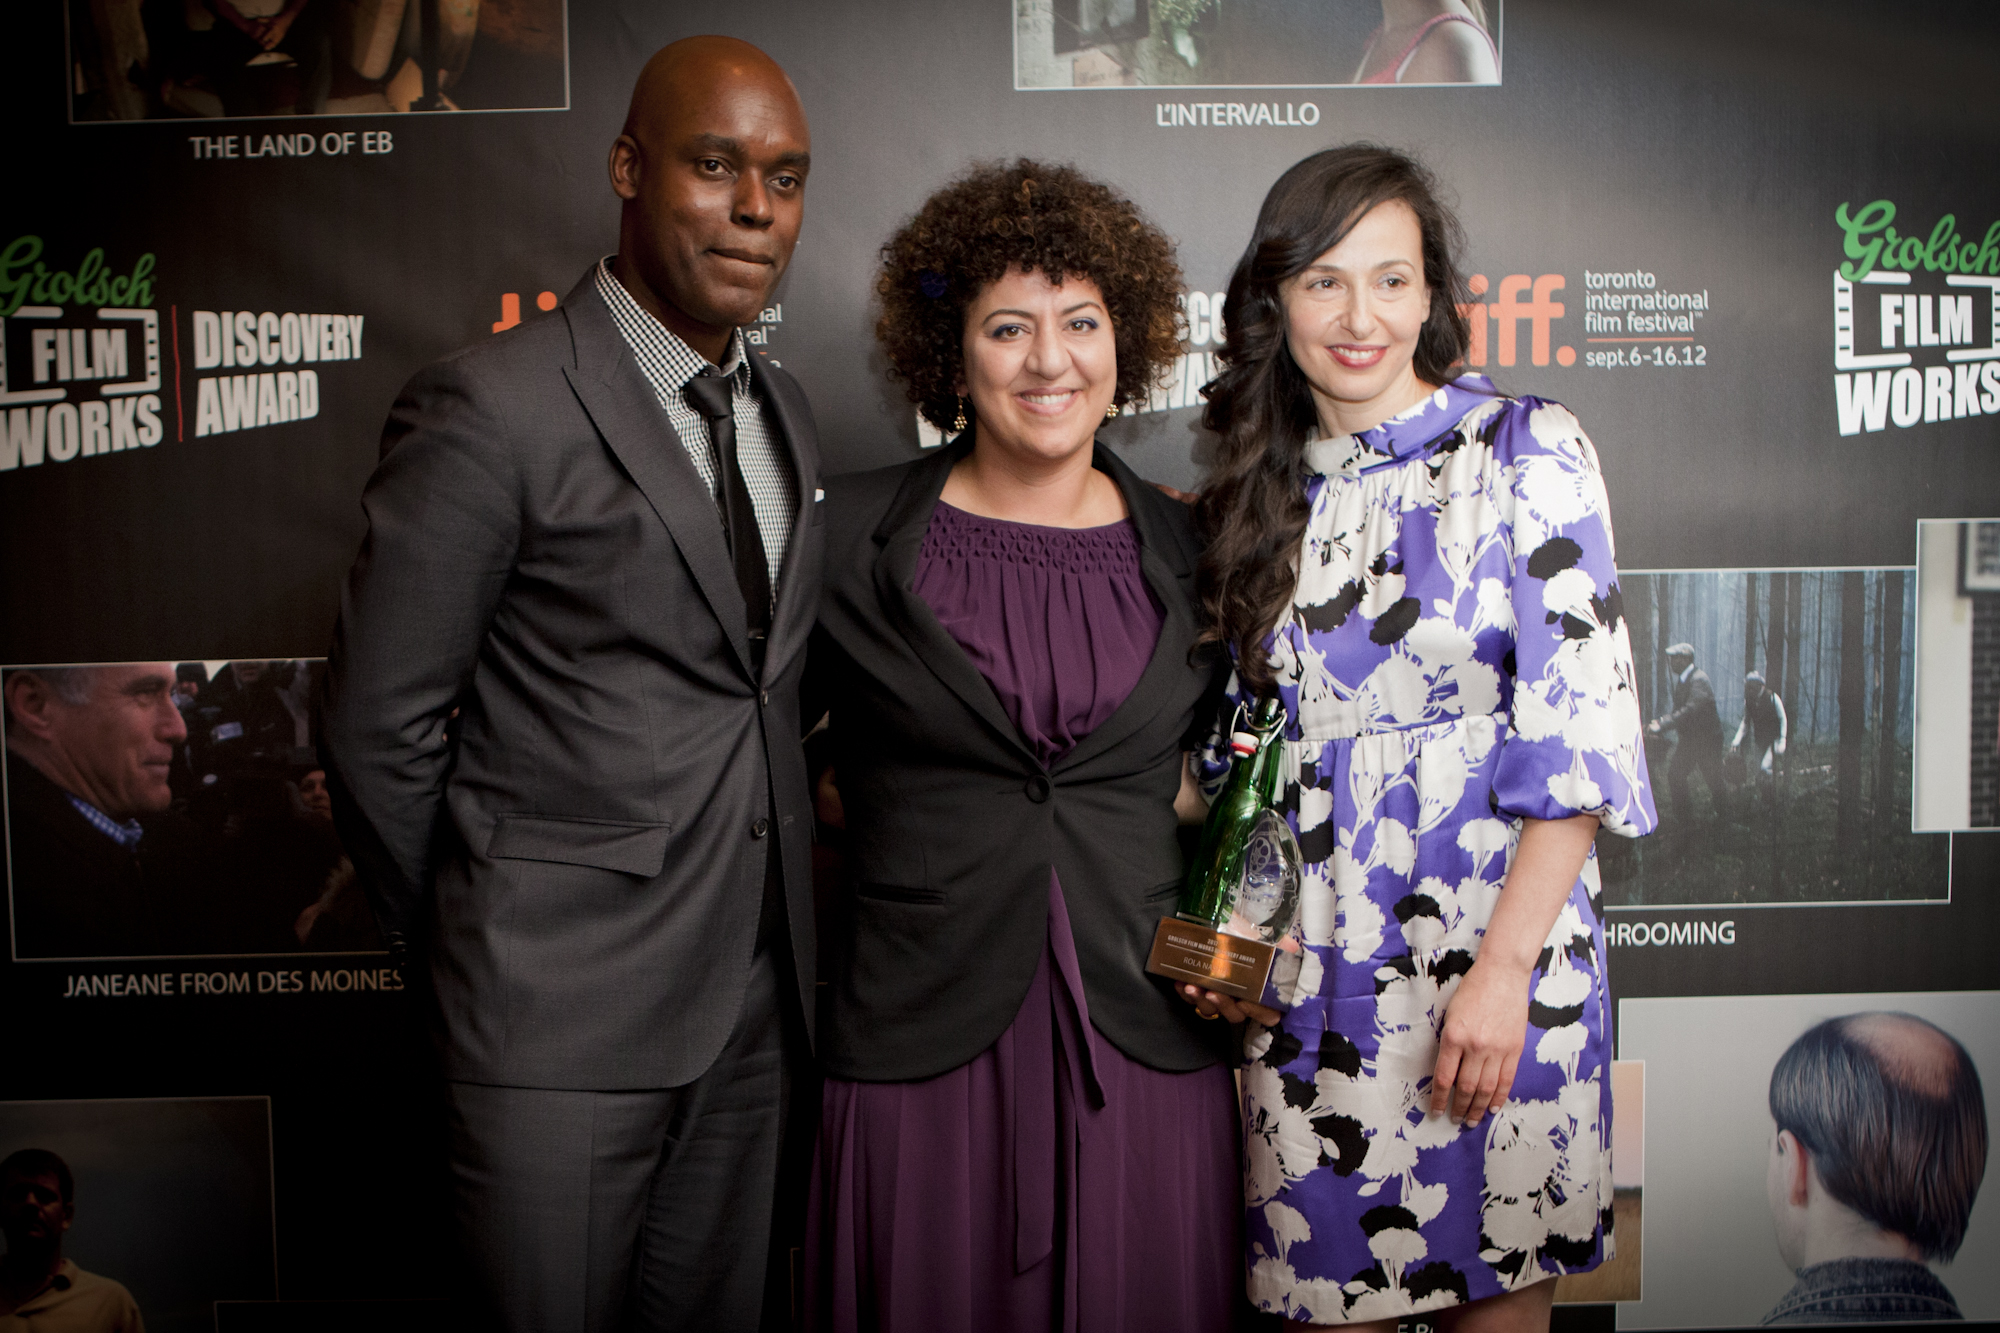 Grolsch Film Works Discovery Award TIFF 2012